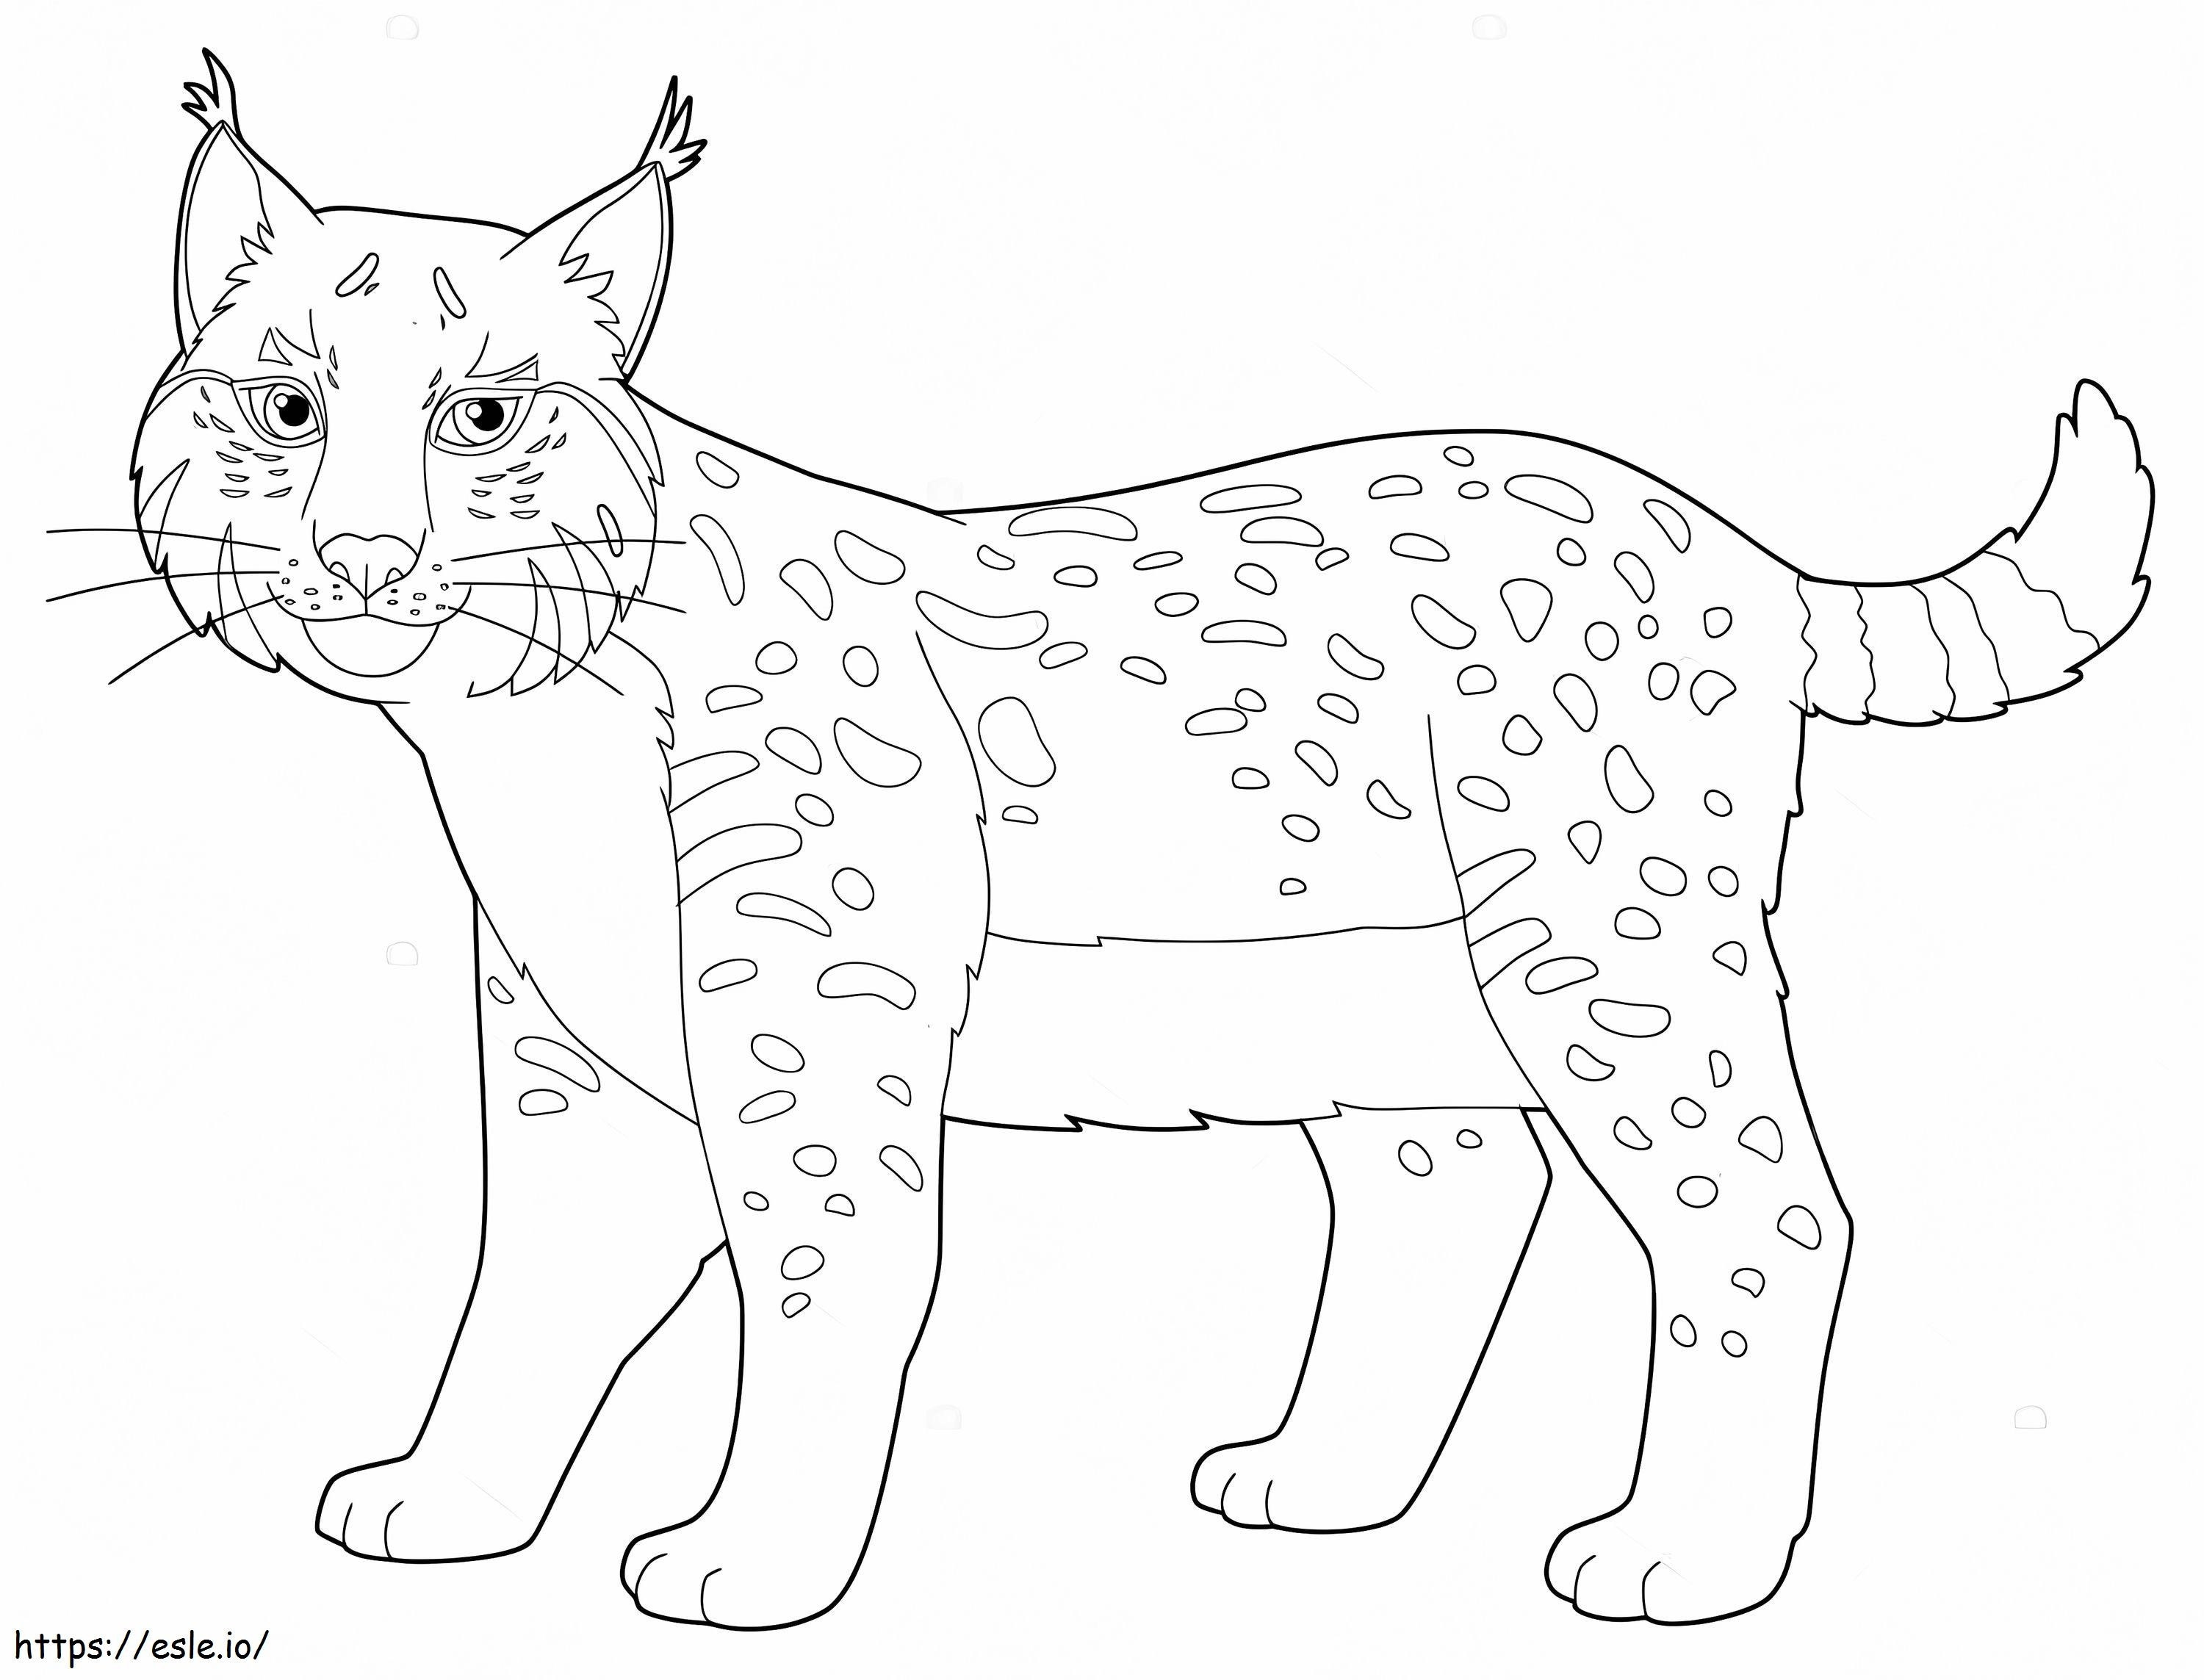 Cartoon Lynx coloring page